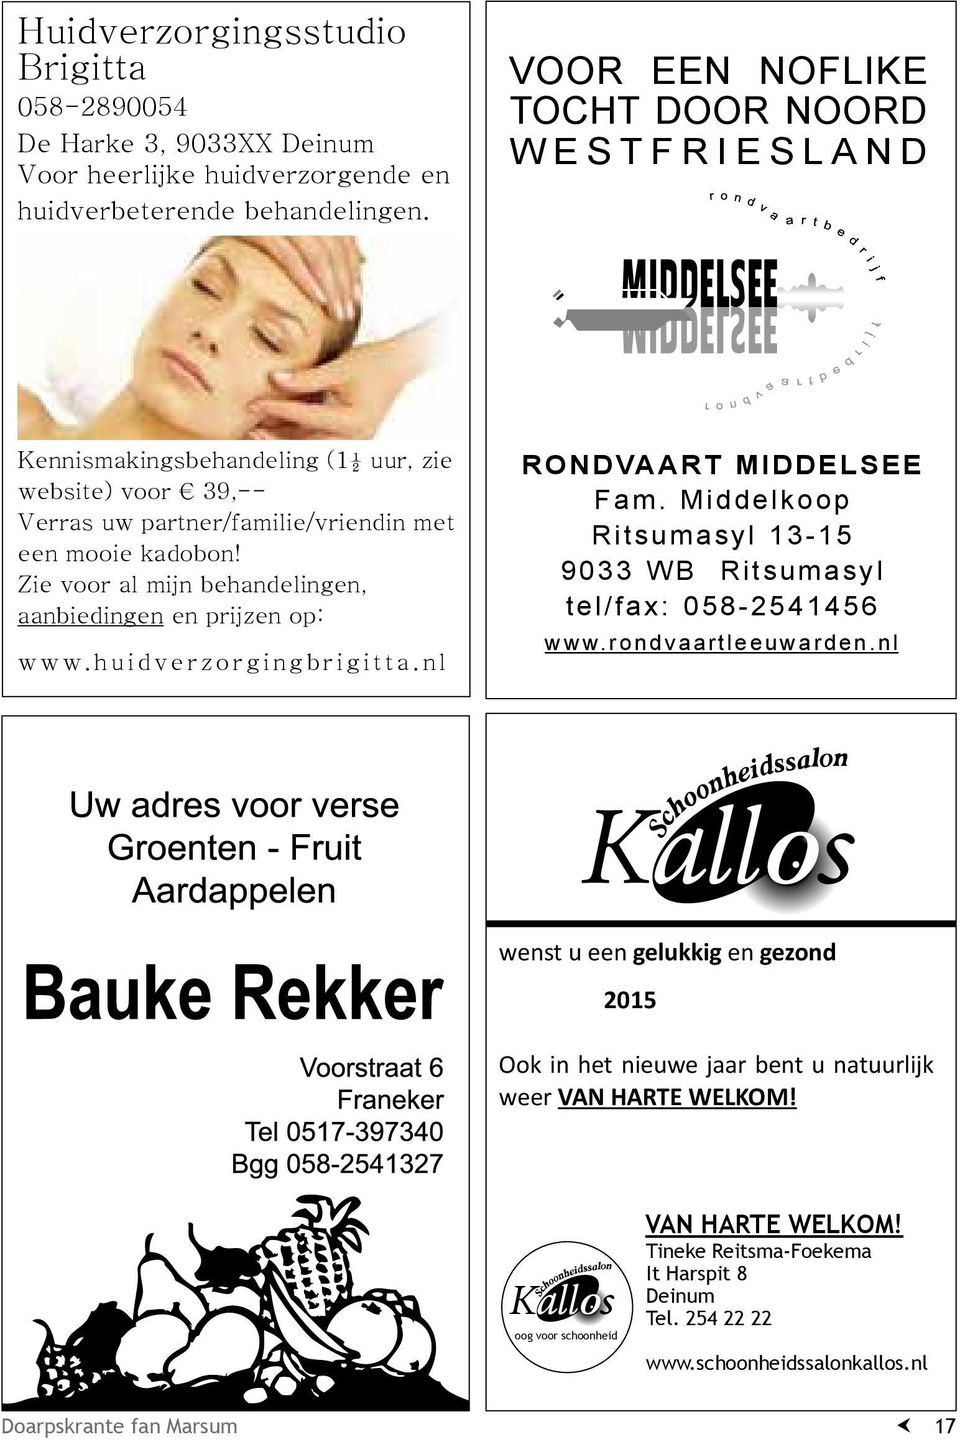 Zie voor al mijn behandelingen, aanbiedingen en prijzen op: www.huidverzorgingbrigitta.nl RONDVAART MIDDELSEE Fam. Middelkoop Ritsumasyl 13-15 9033 WB Ritsumasyl tel/fax: 058-2541456 www.